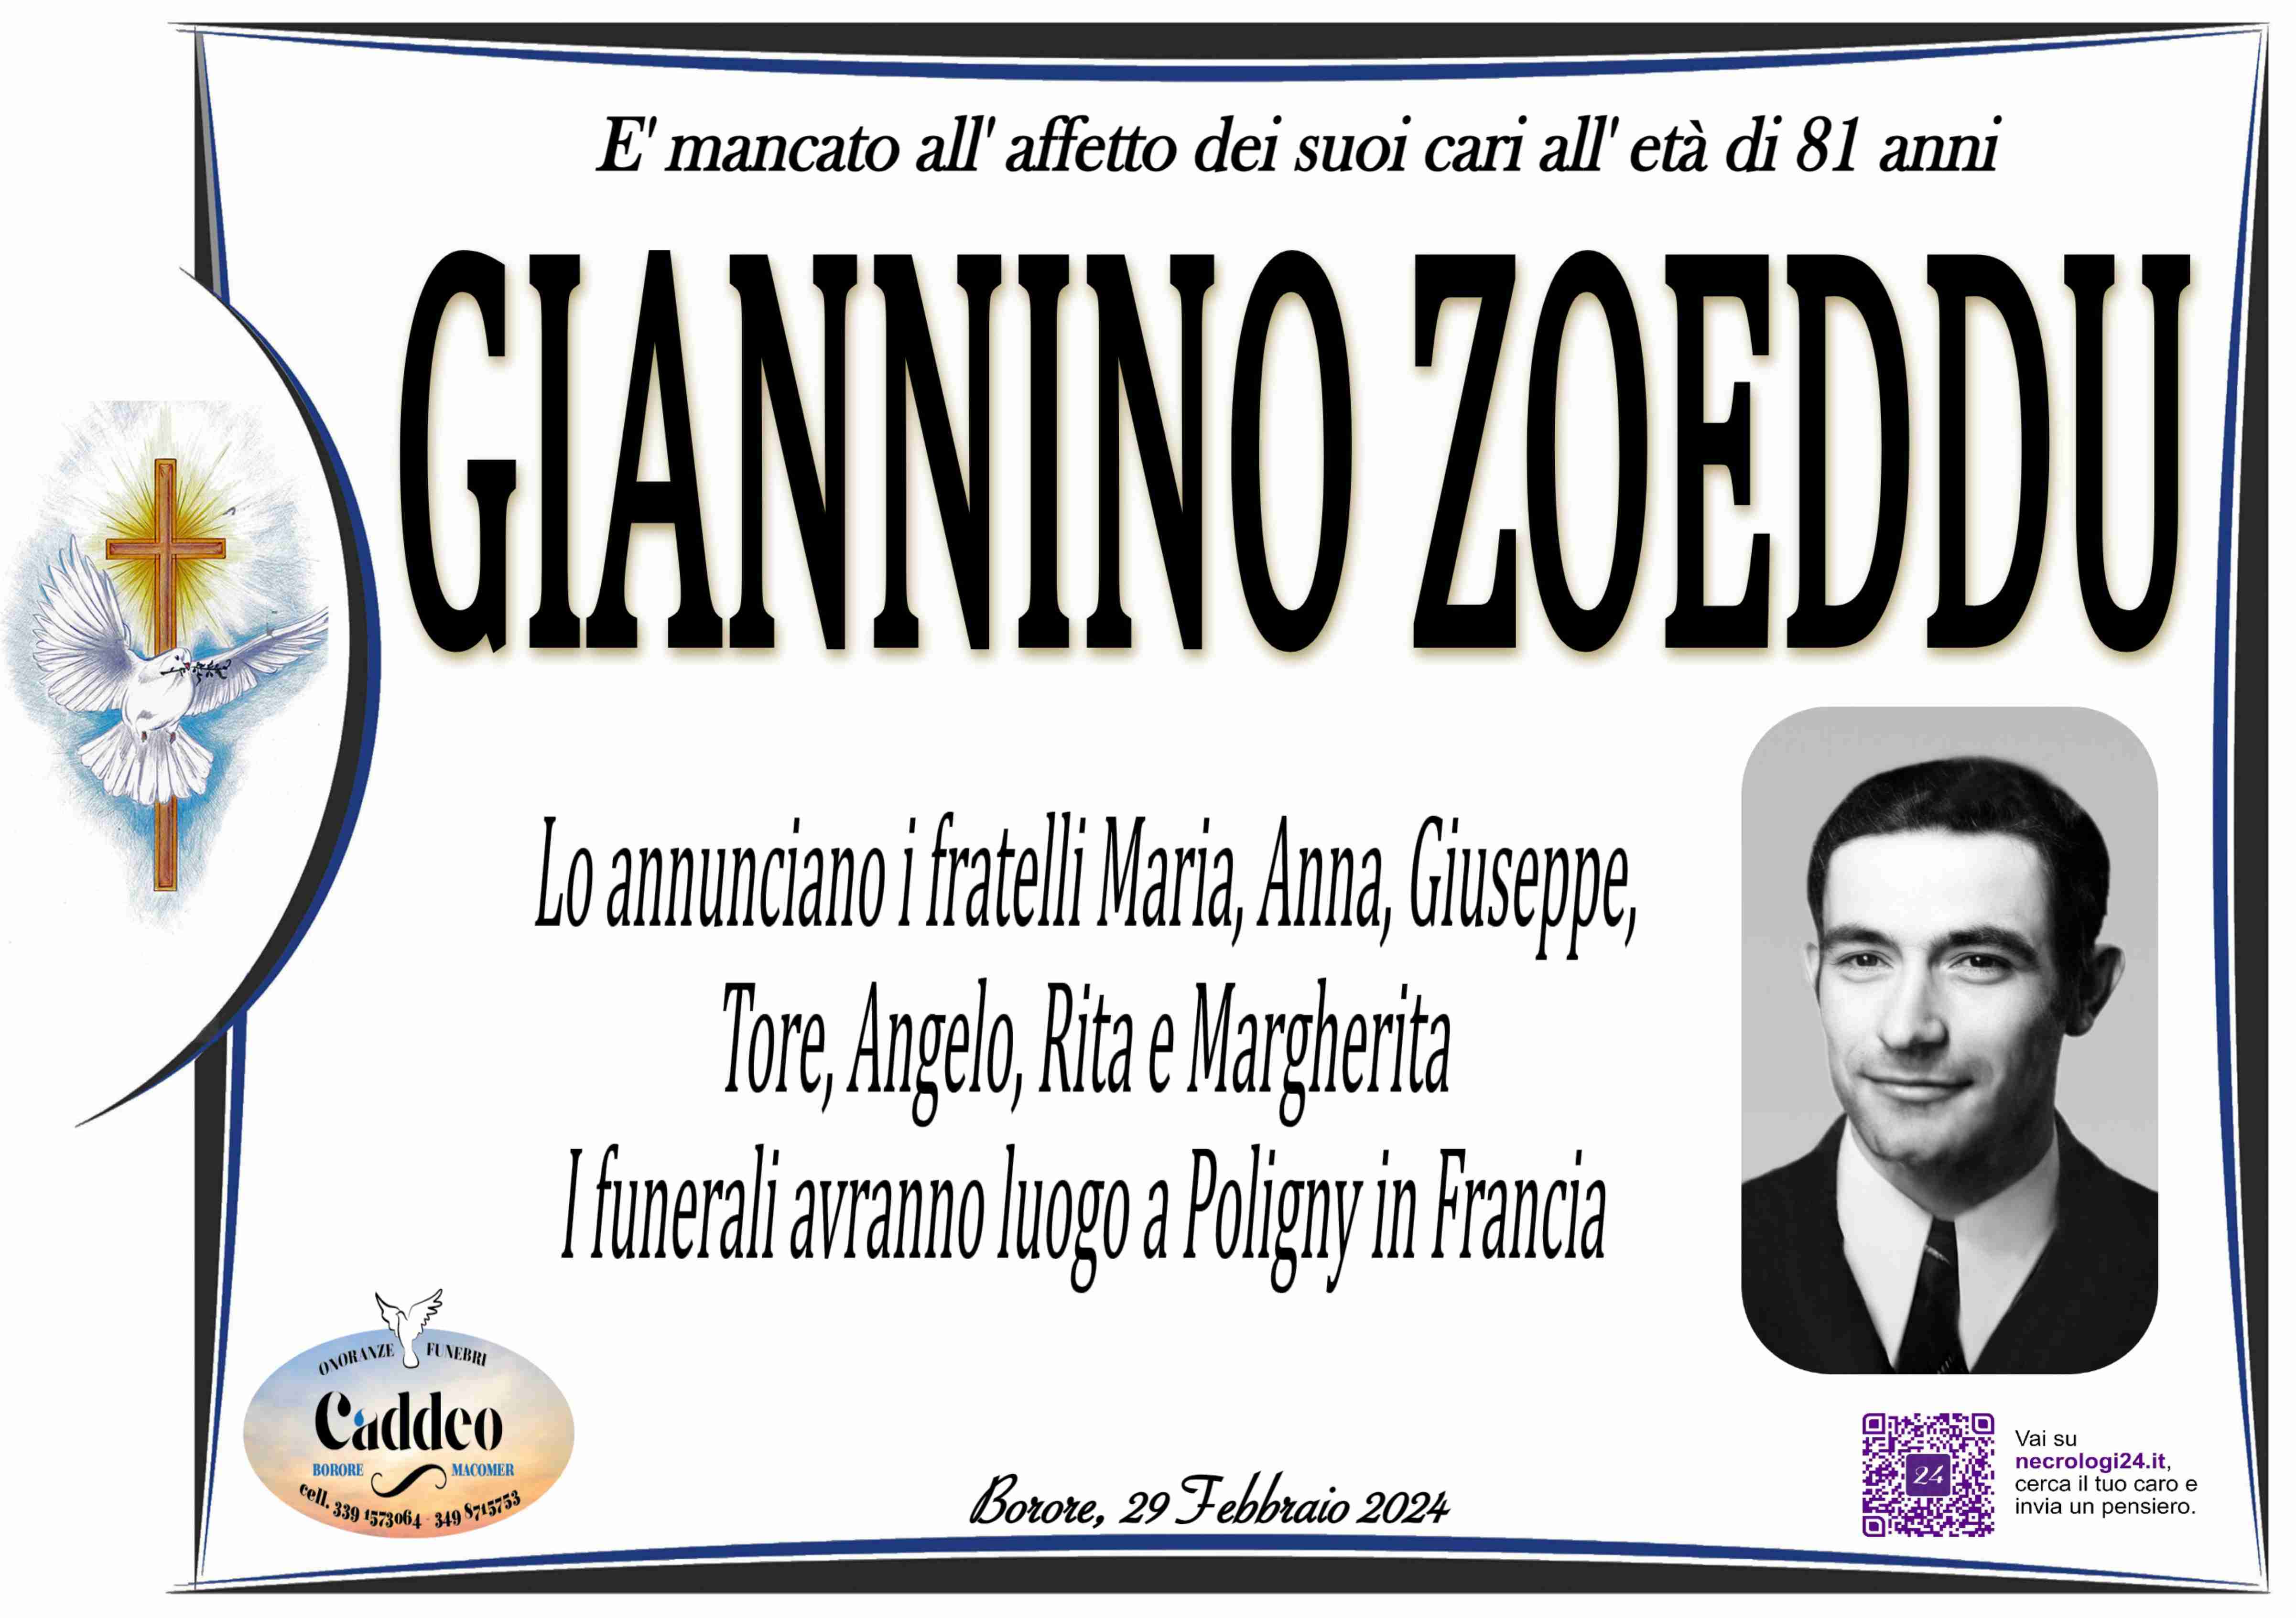 Giannino Zoeddu